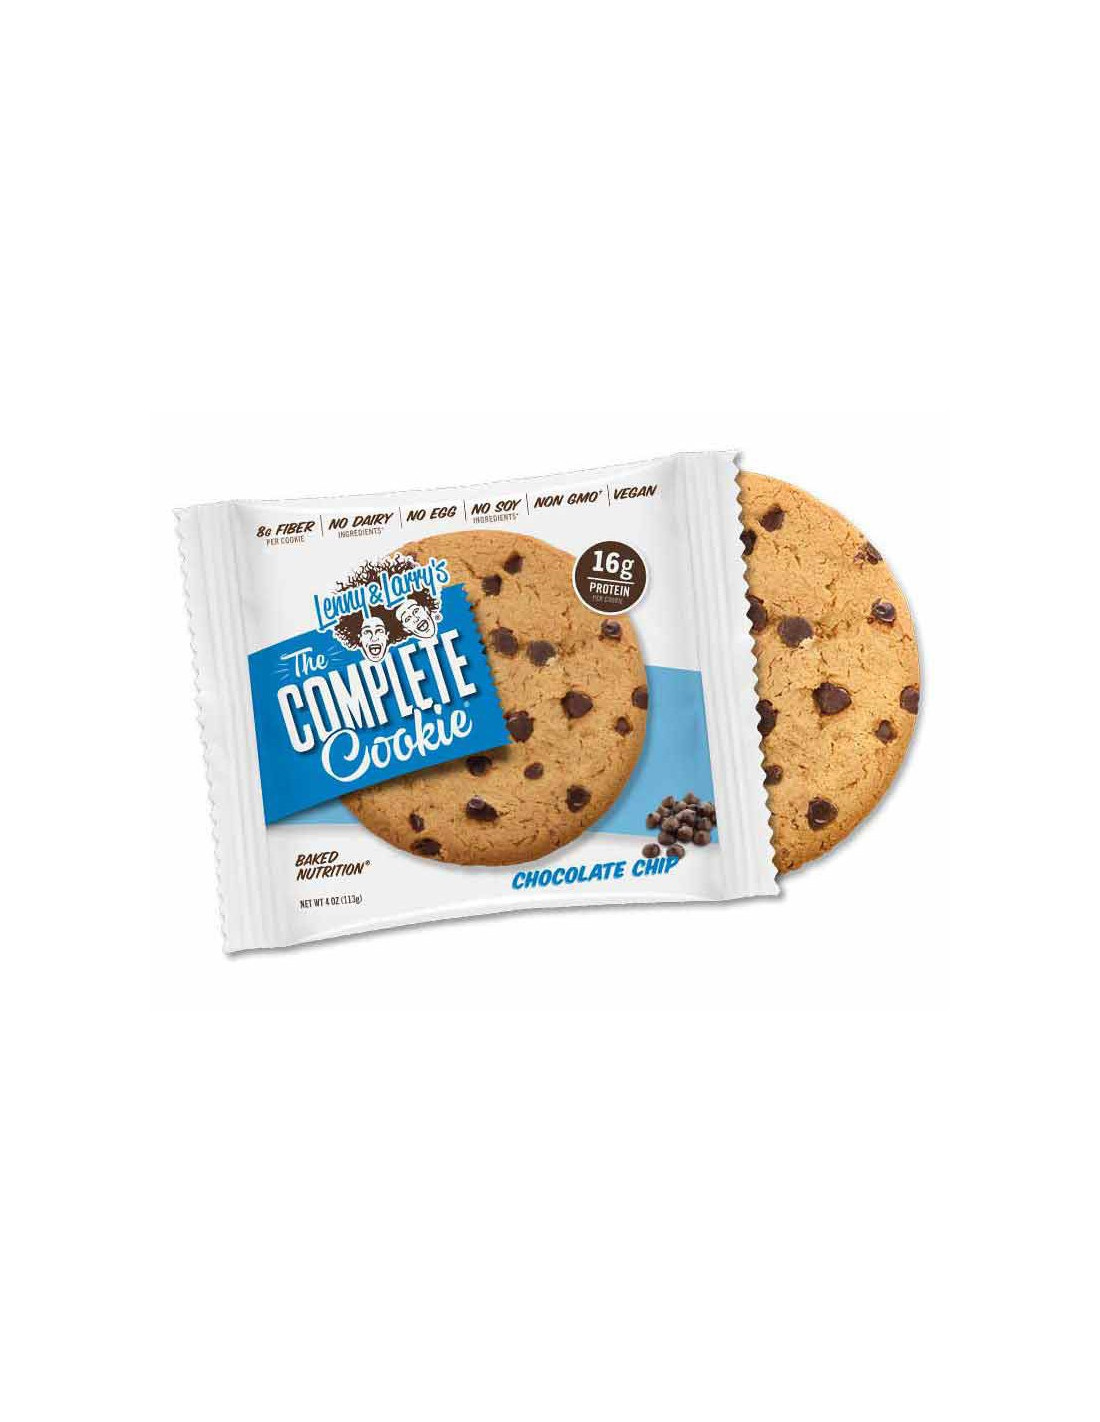 Cookie Protéiné  Un délicieux cookie avec peu de sucre